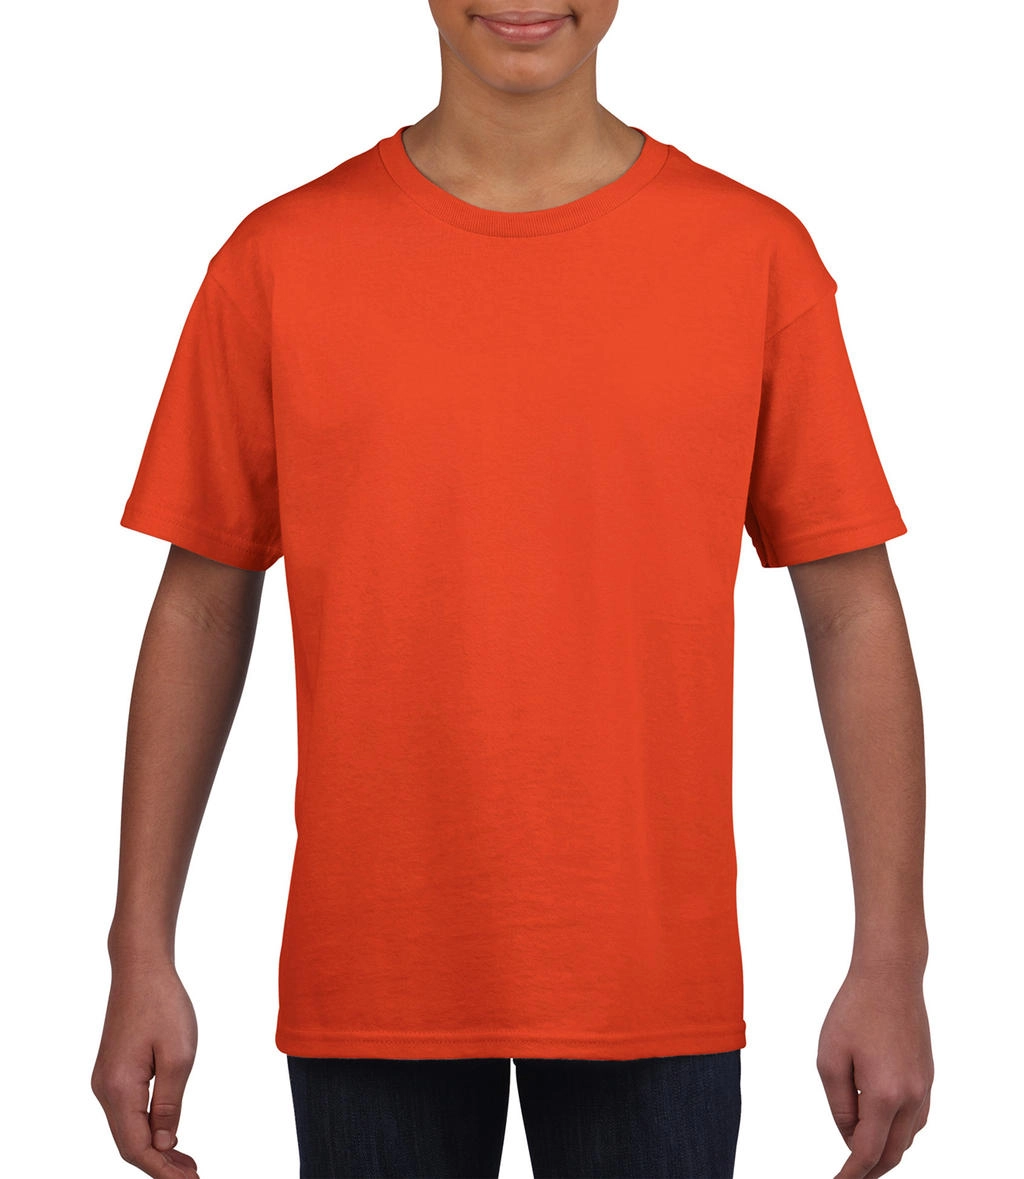 Softstyle® Youth T-Shirt zum Besticken und Bedrucken in der Farbe Orange mit Ihren Logo, Schriftzug oder Motiv.